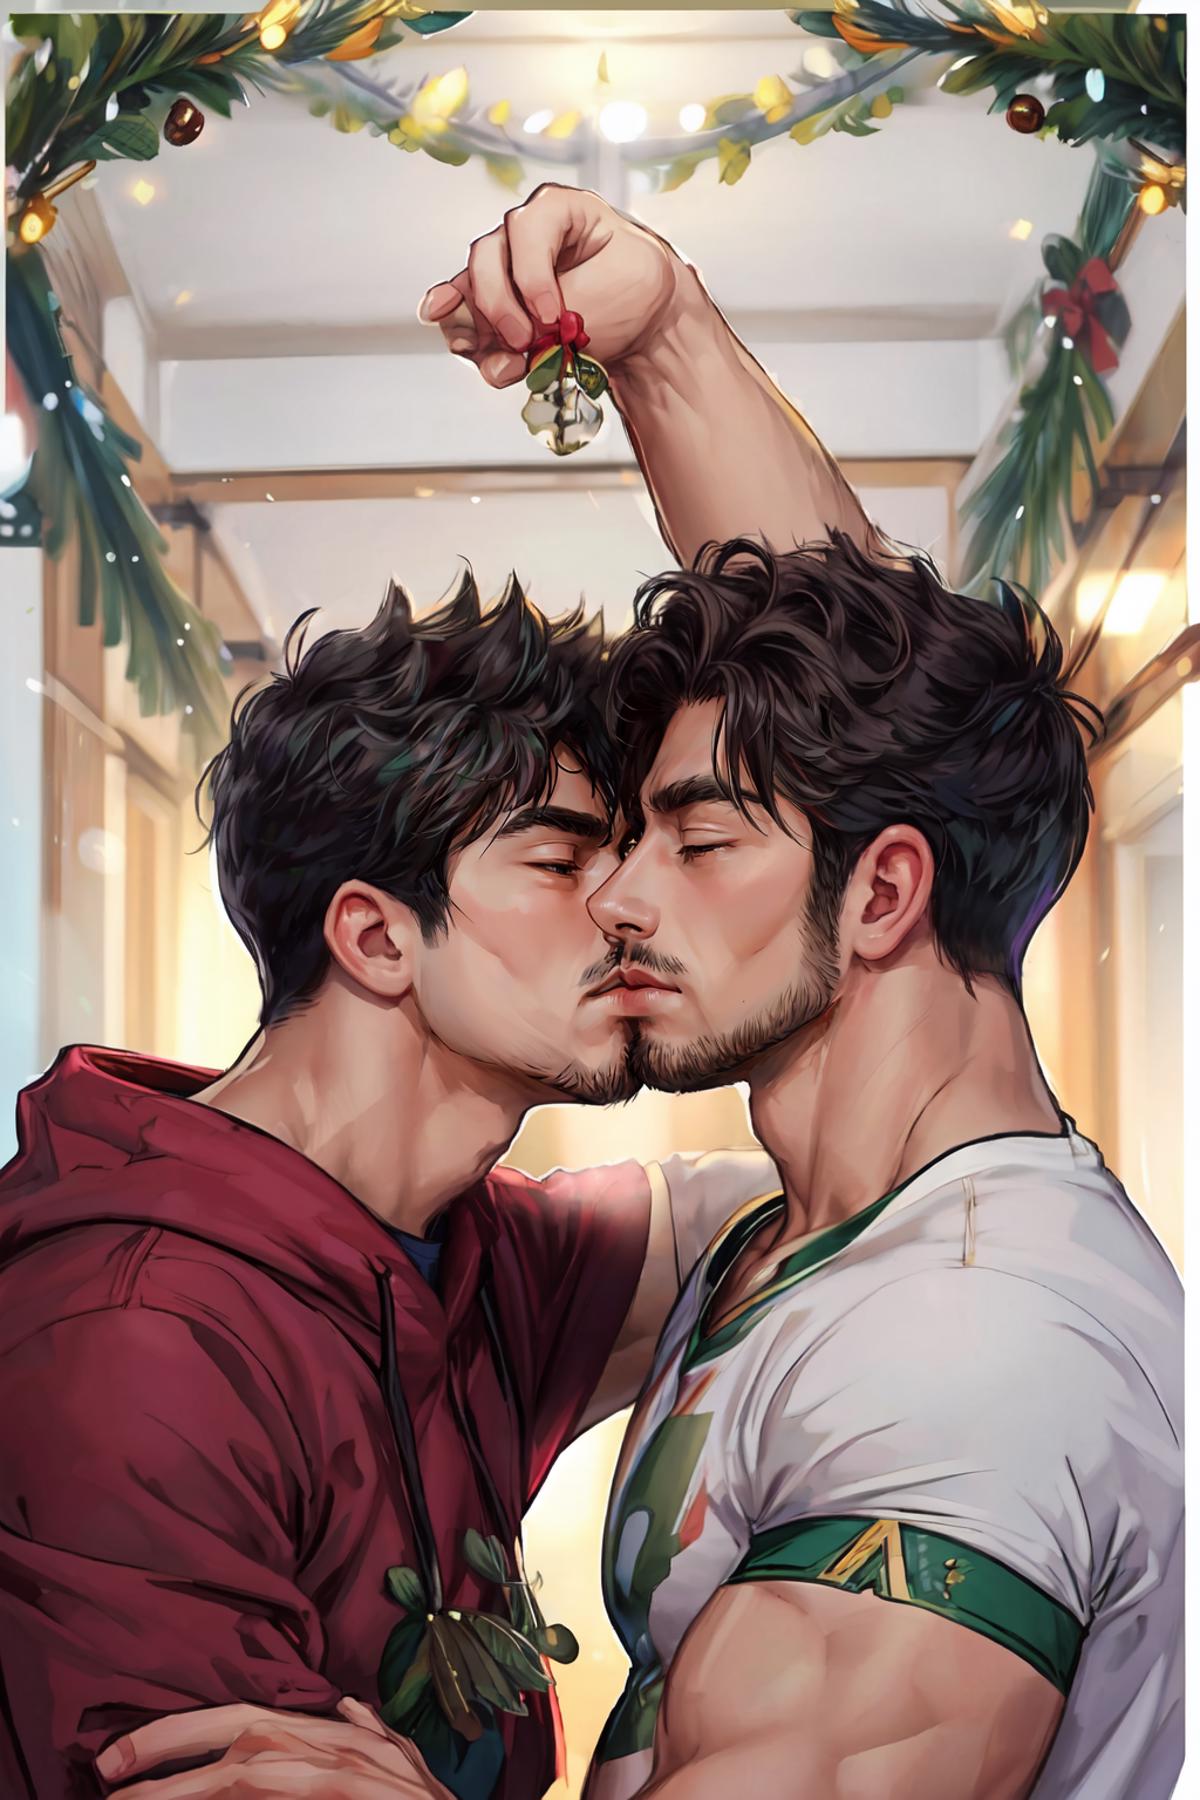 Mistletoe Kiss (Concept) image by SecretEGGNOG